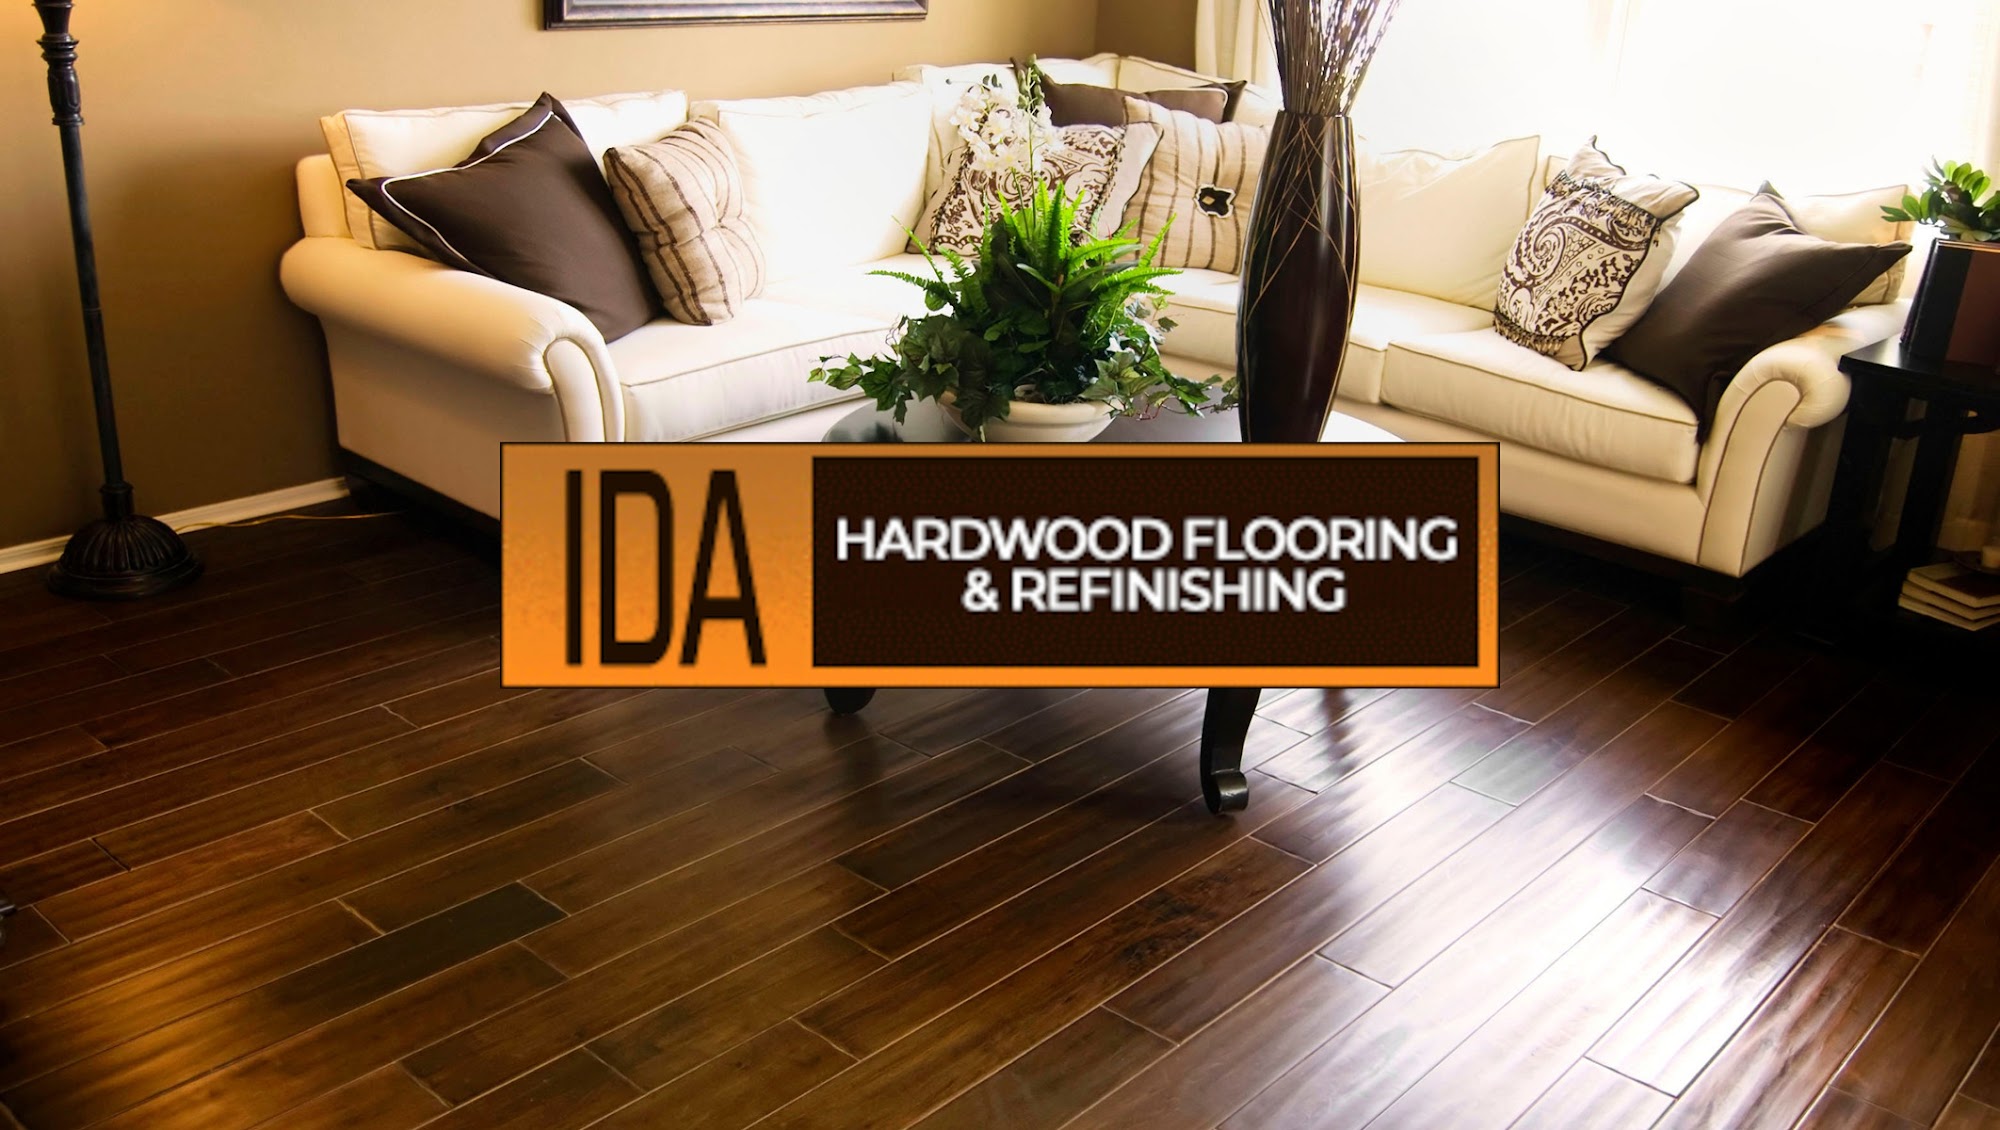 IDA Hardwood Flooring & Refinishing